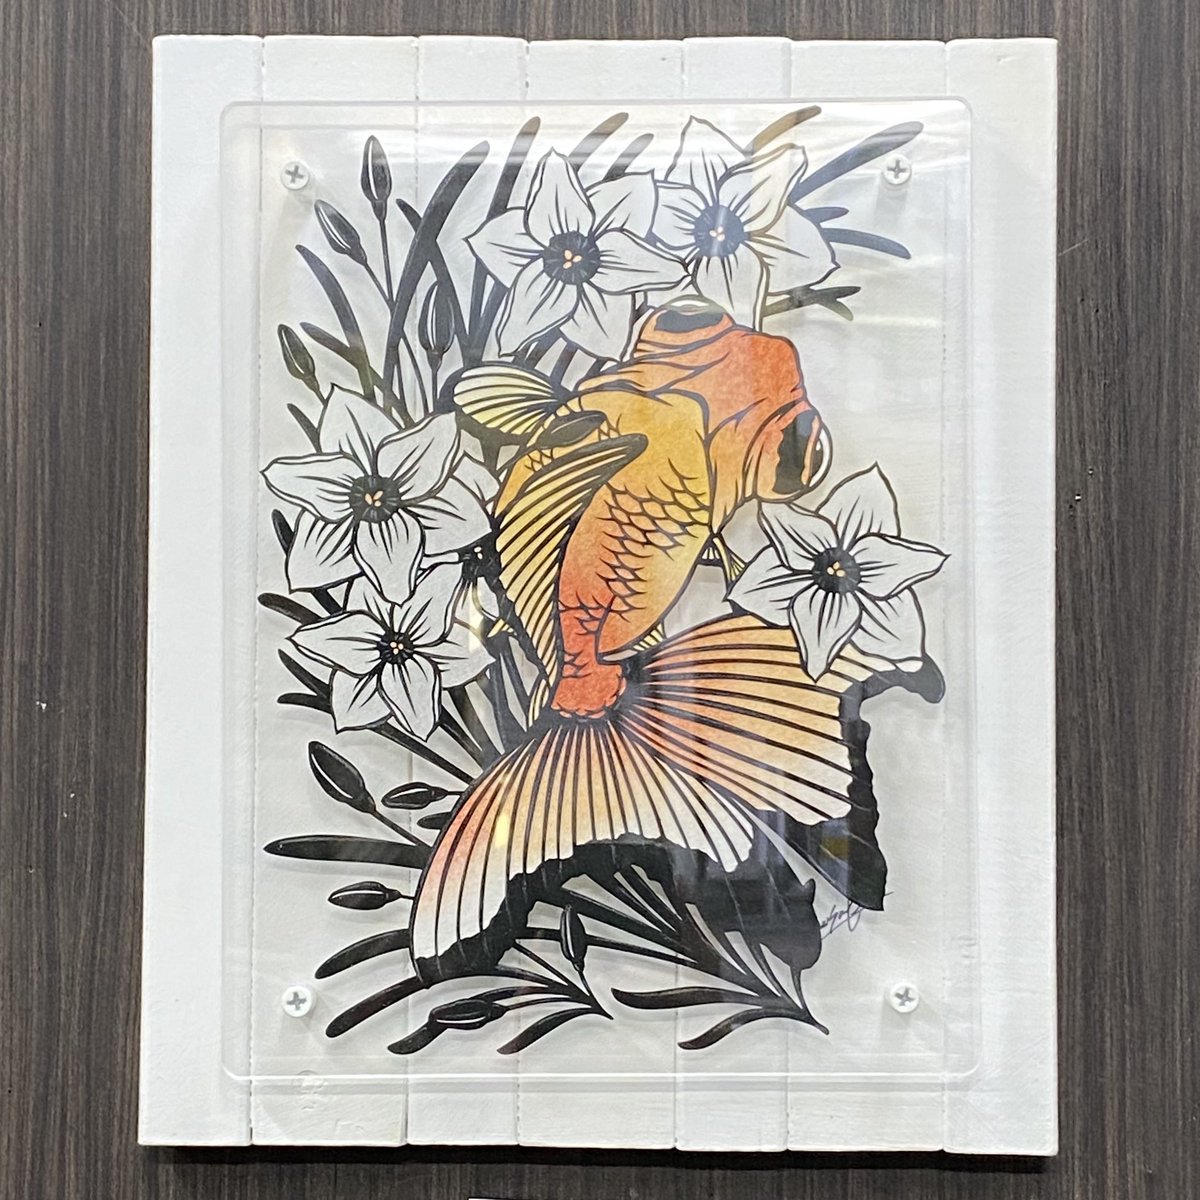 #ミニ自在展 出展作家
雅人(@mimic0928)さんの作品。

レッサーパンダ蝶尾と水仙がとても合っていますね。
綺麗なオレンジが映えます♪
今日は追加作品がたくさんあるみたいですよ〜! 